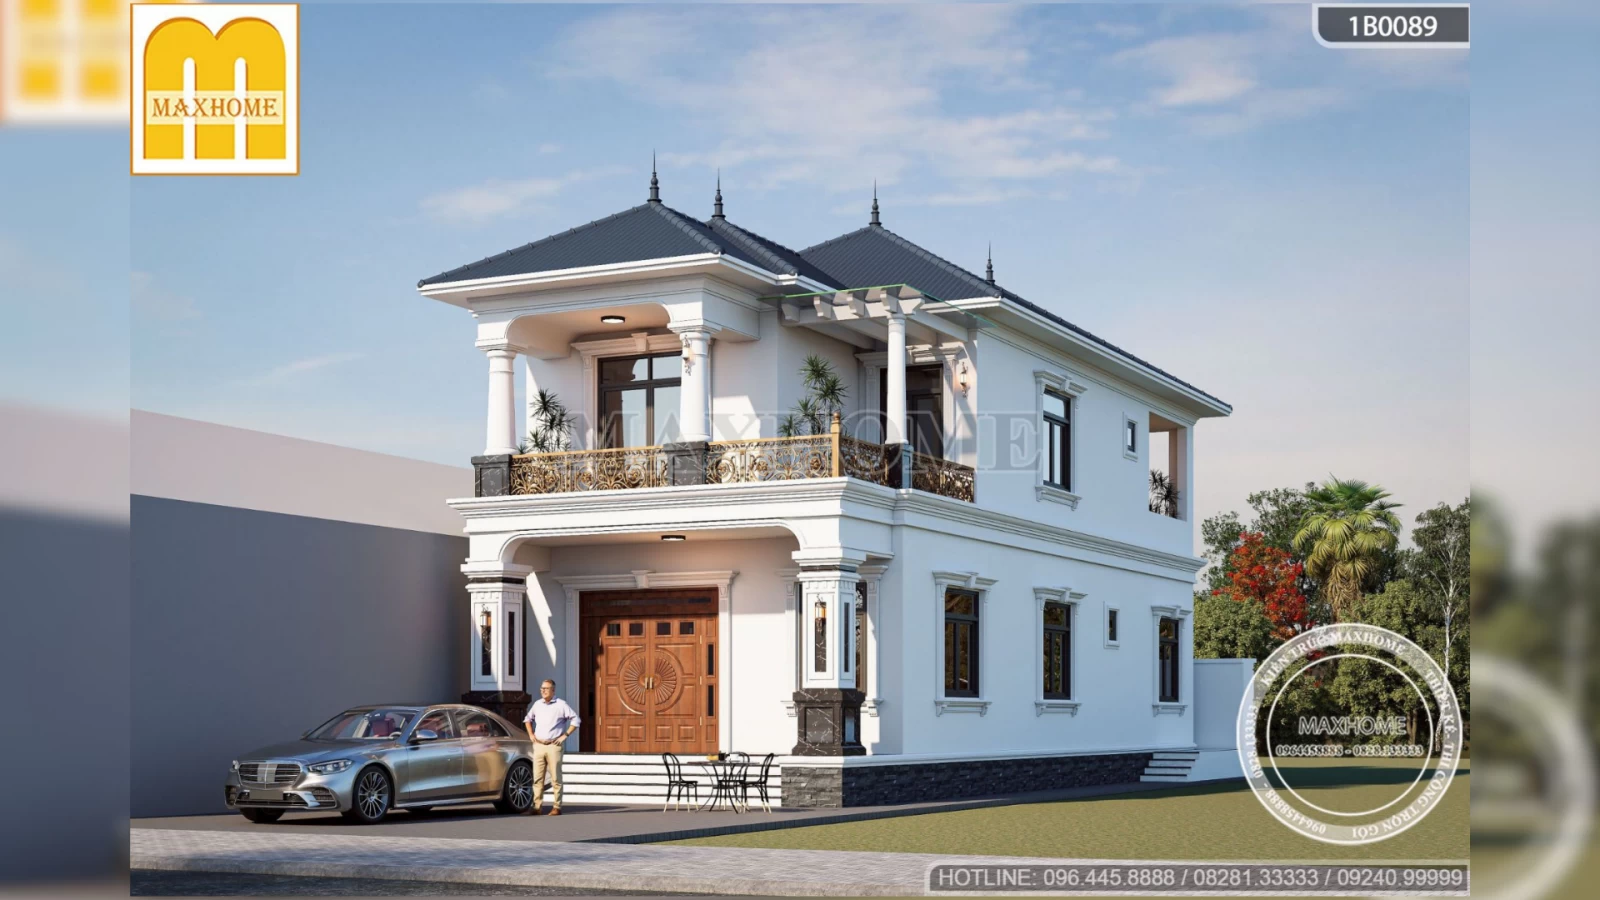 Mẫu nhà 2 tầng mái Nhật tân cổ điển đẹp mê hồn tại Hà Nội | MH02874